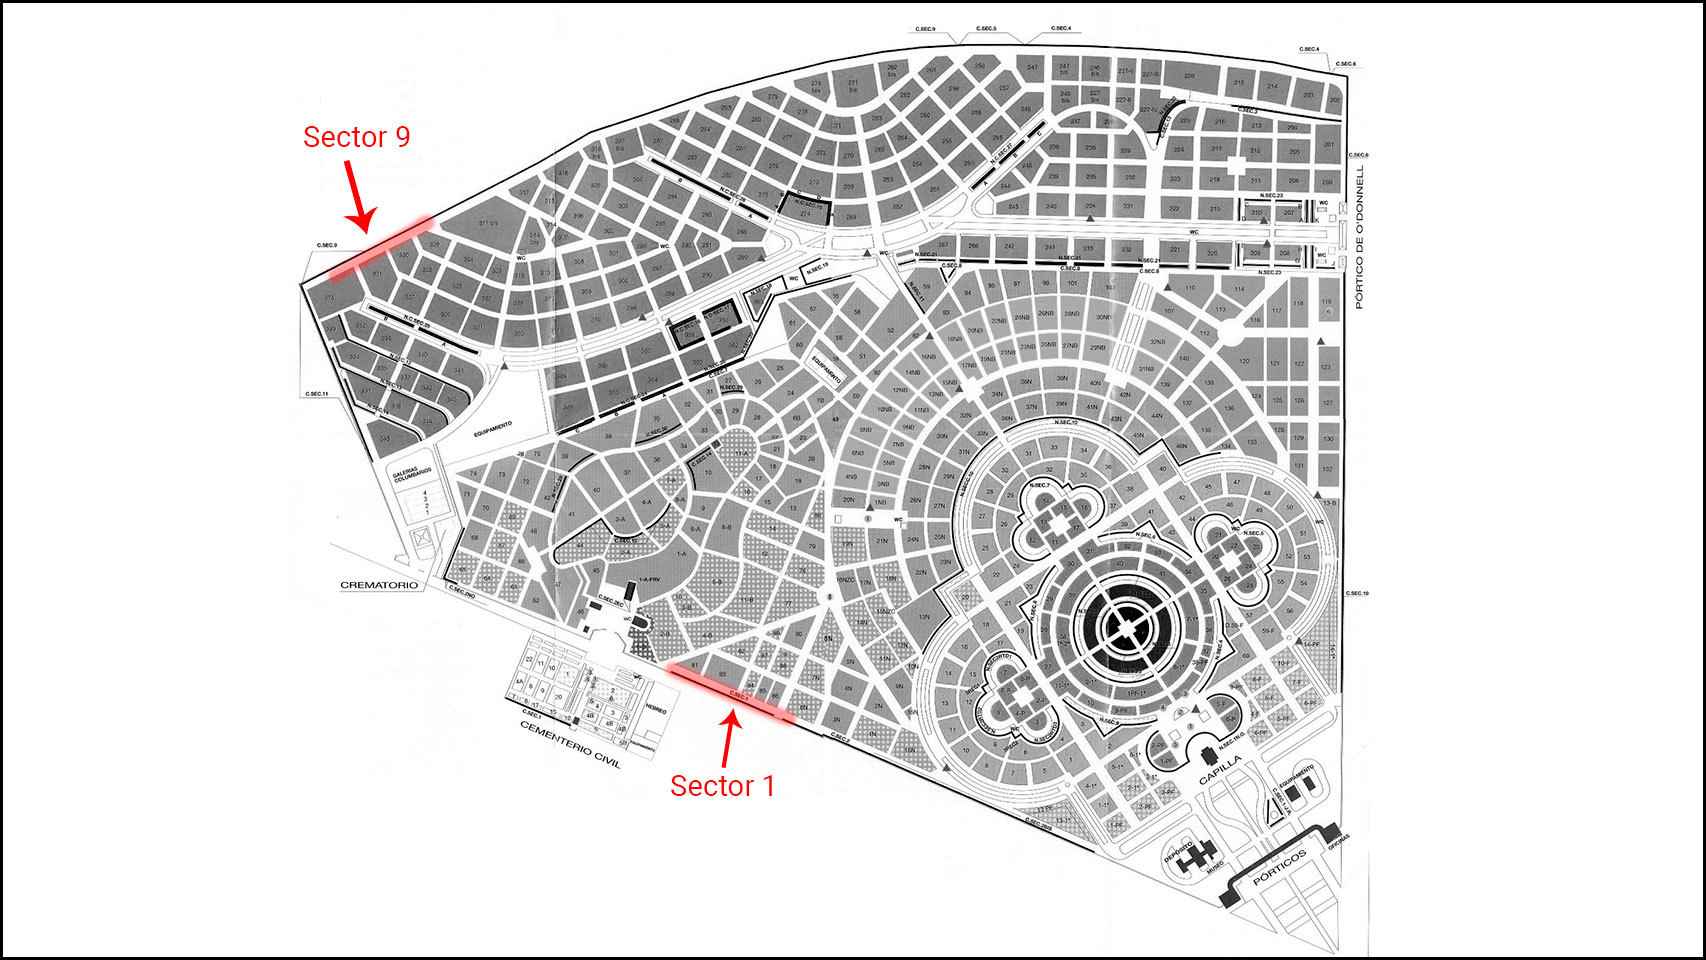 Los lugares en obras, señalados en el mapa de La Almudena.